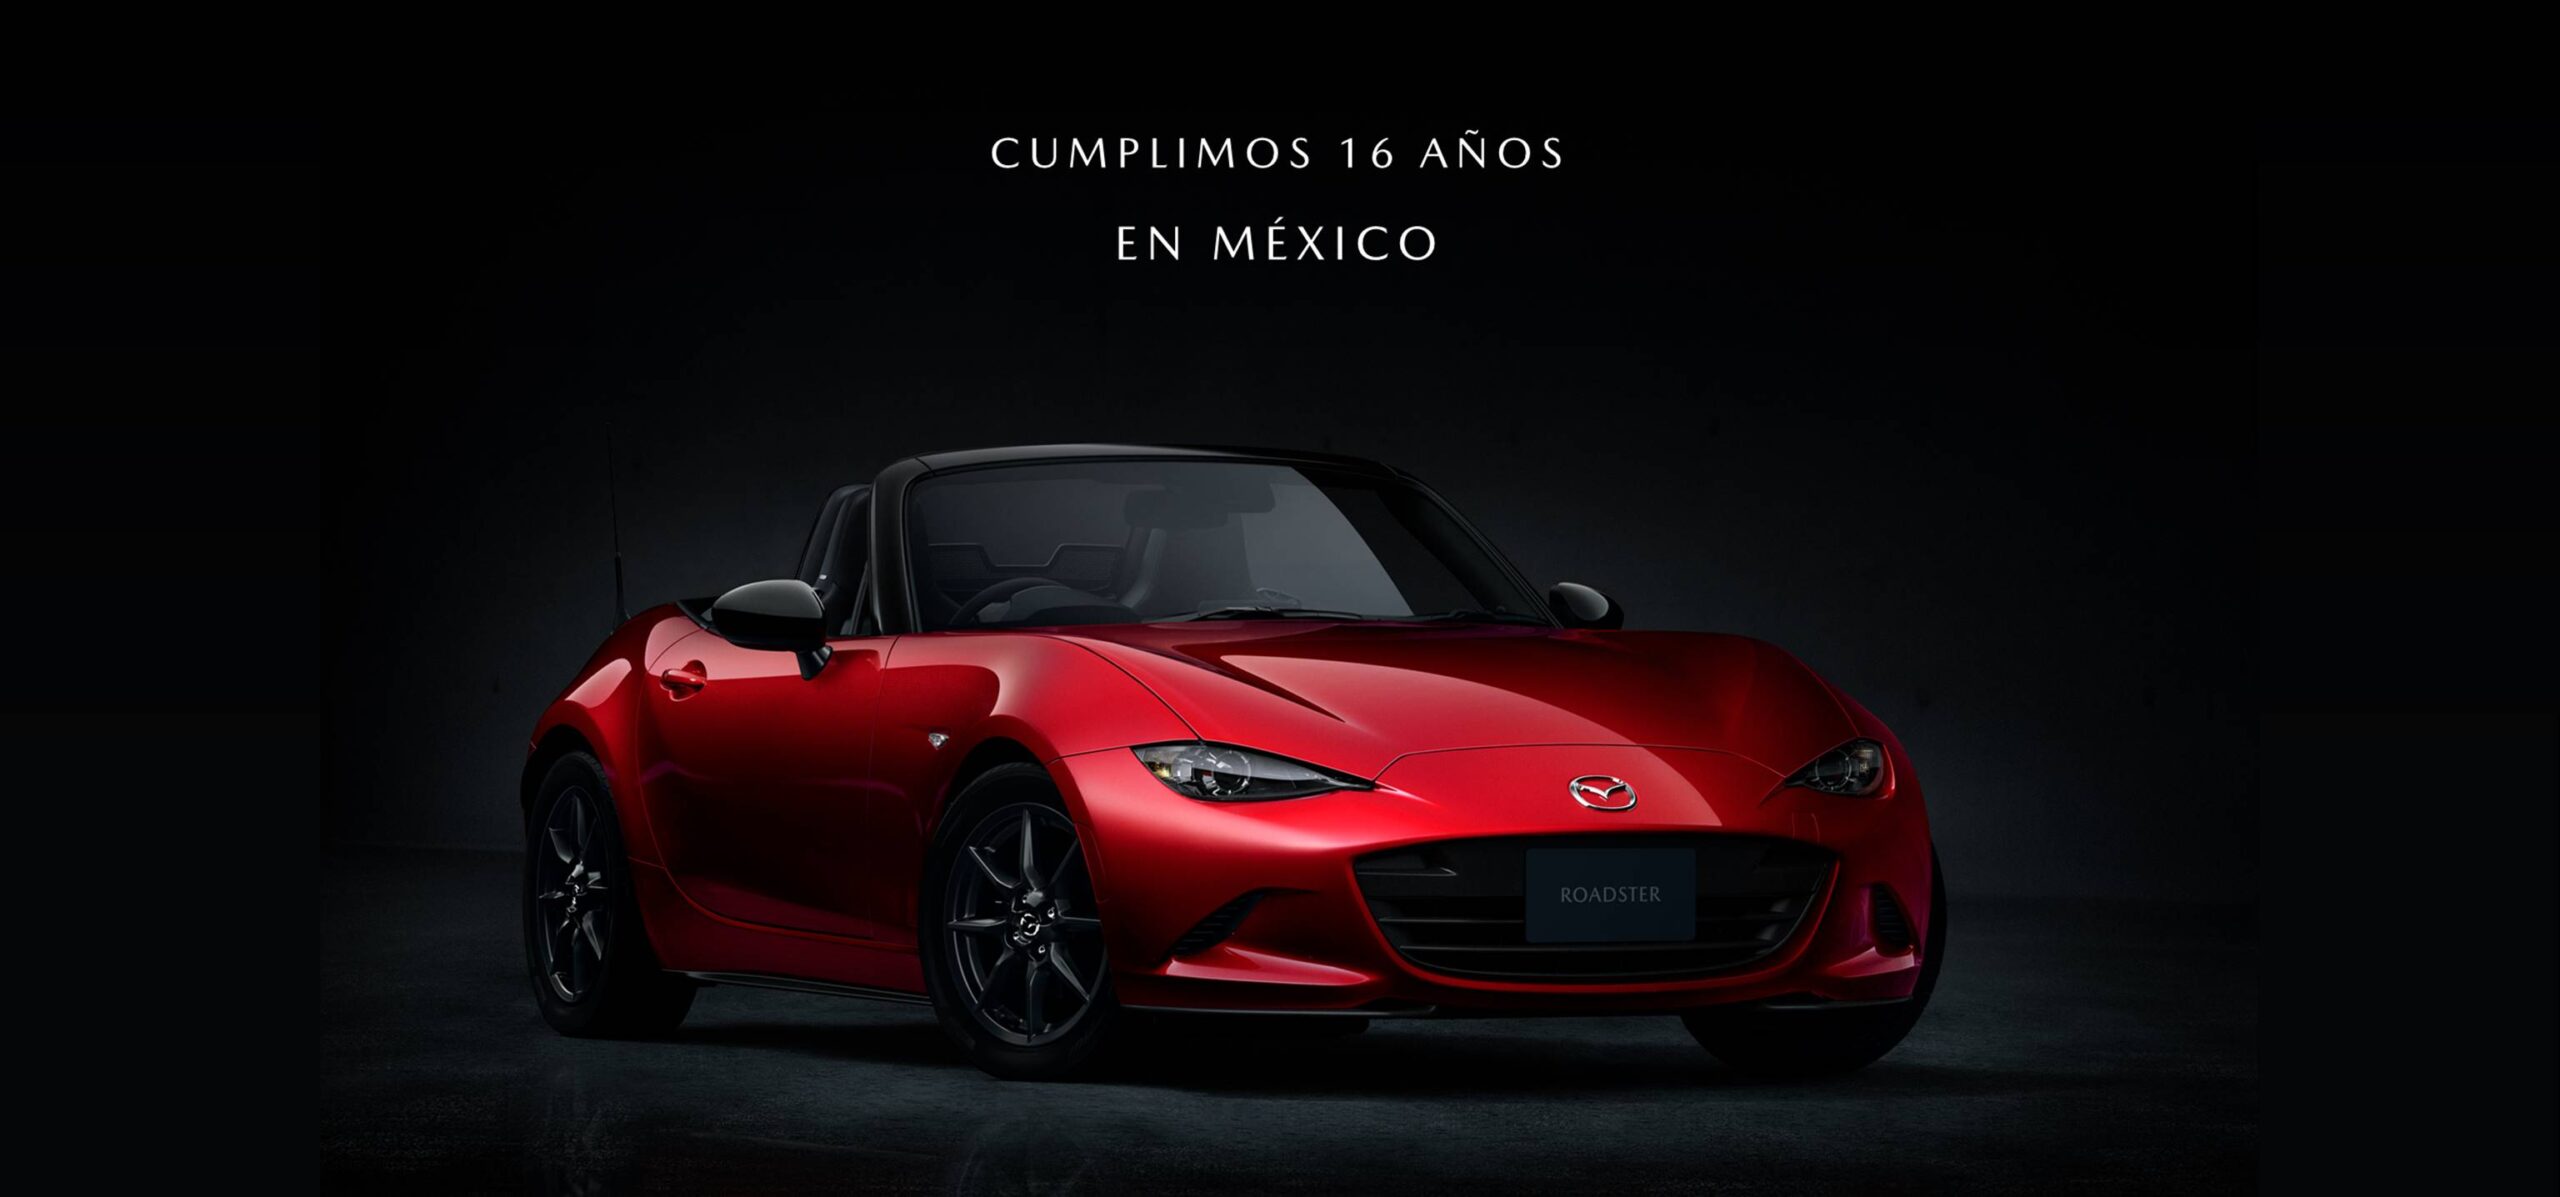 Mazda cumple 16 años en México